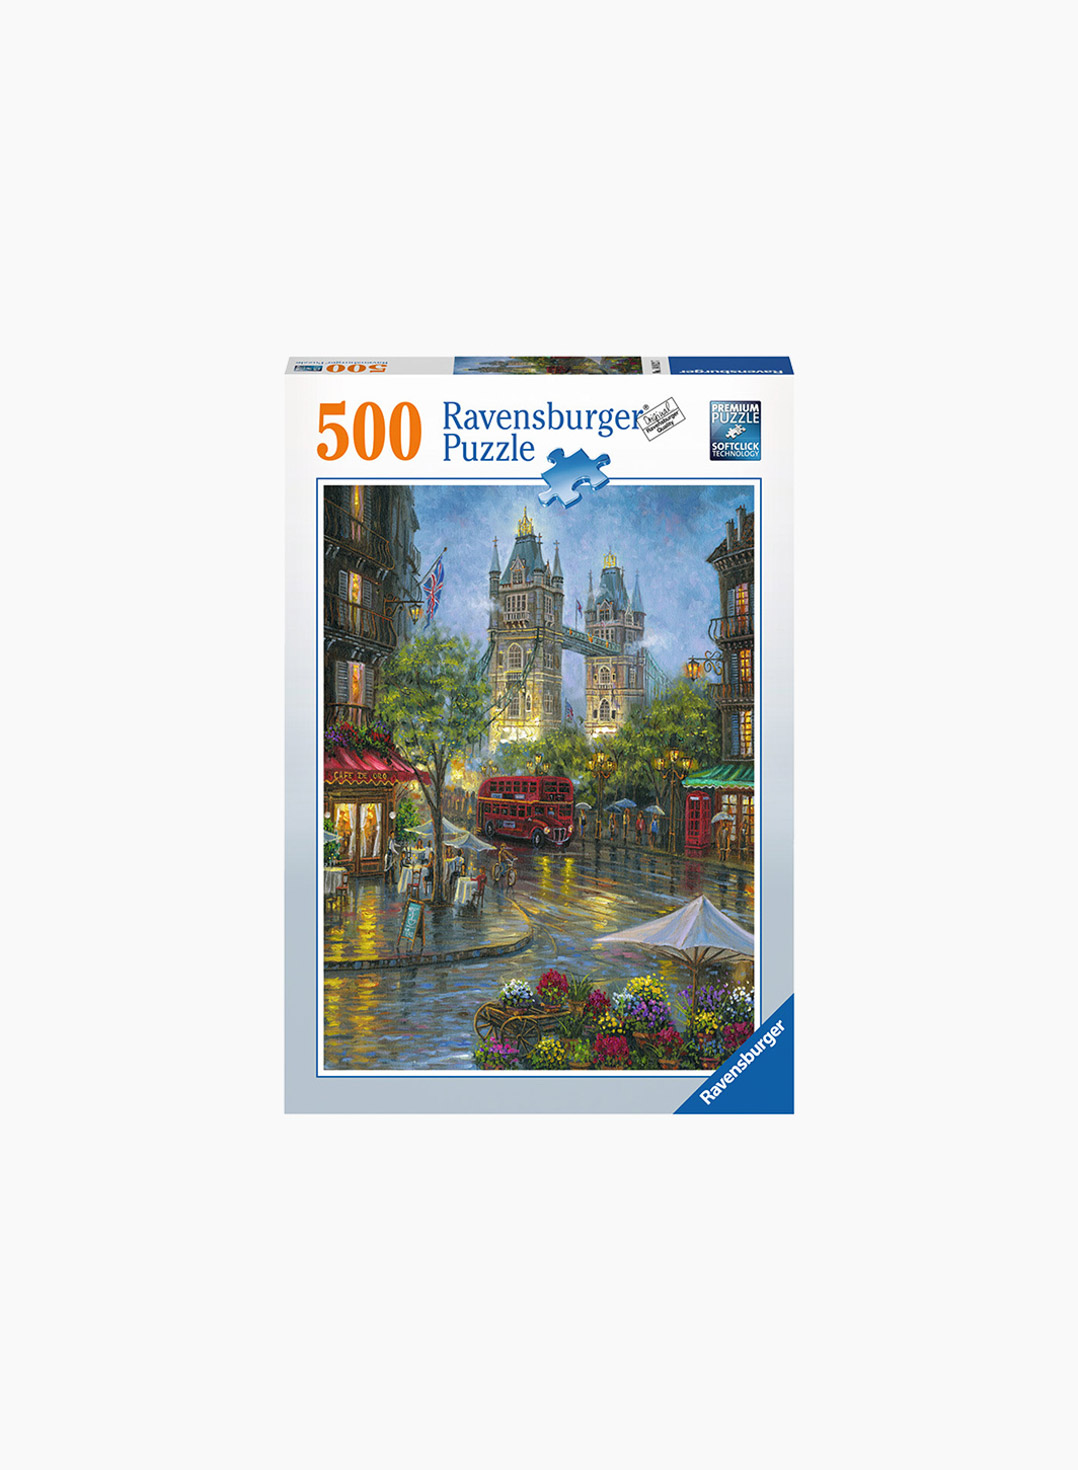 Ravensburger Puzzle Picturesque London 500p